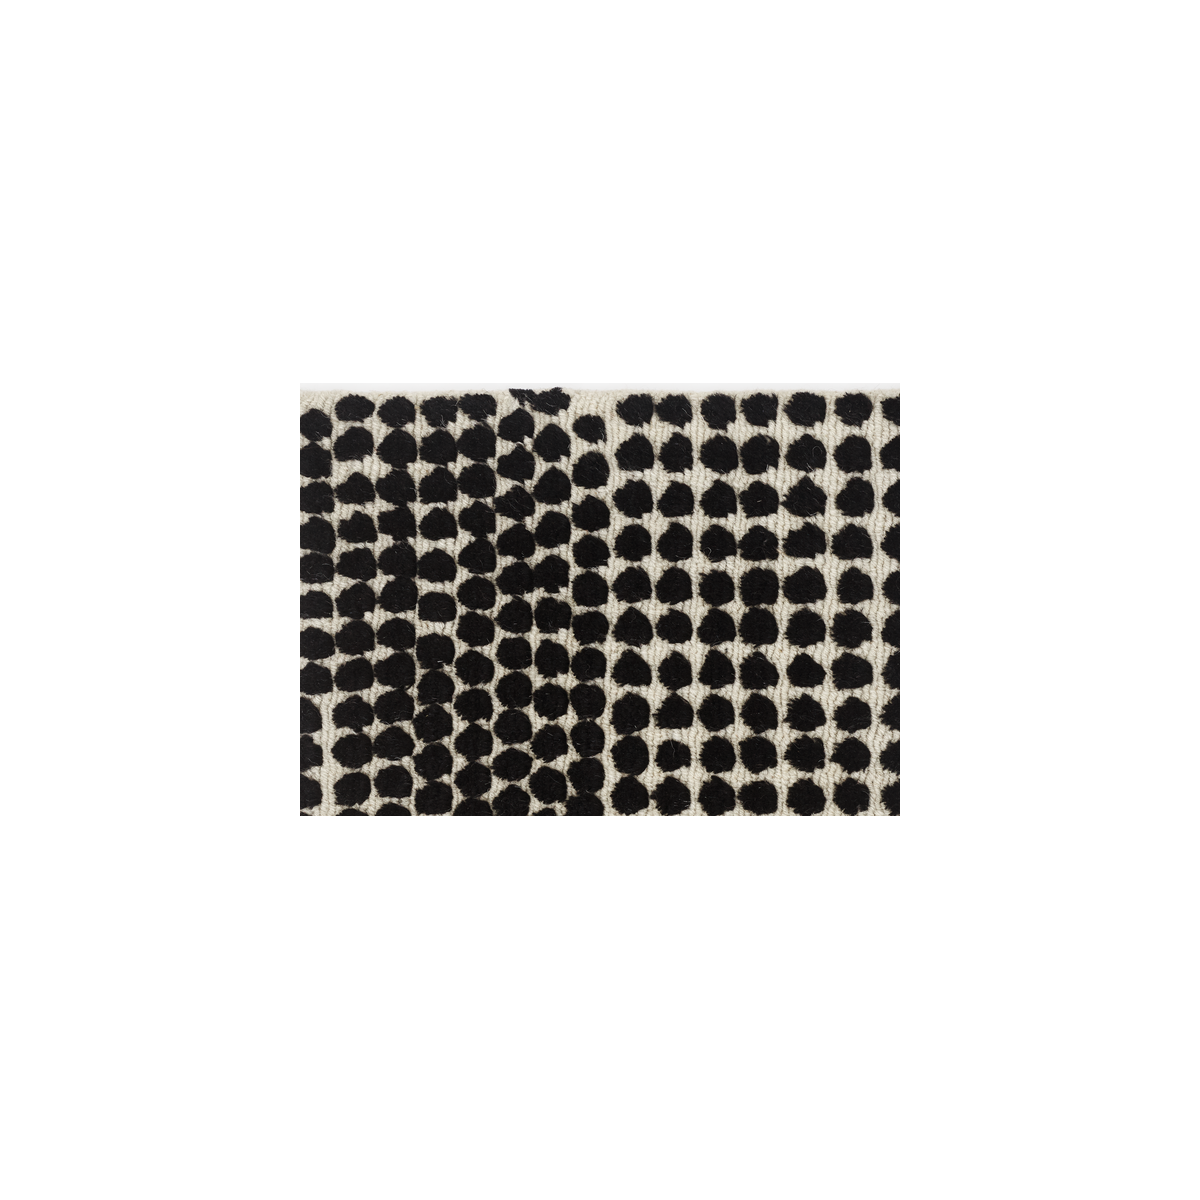 200x300cm - 0130 - Semis rug